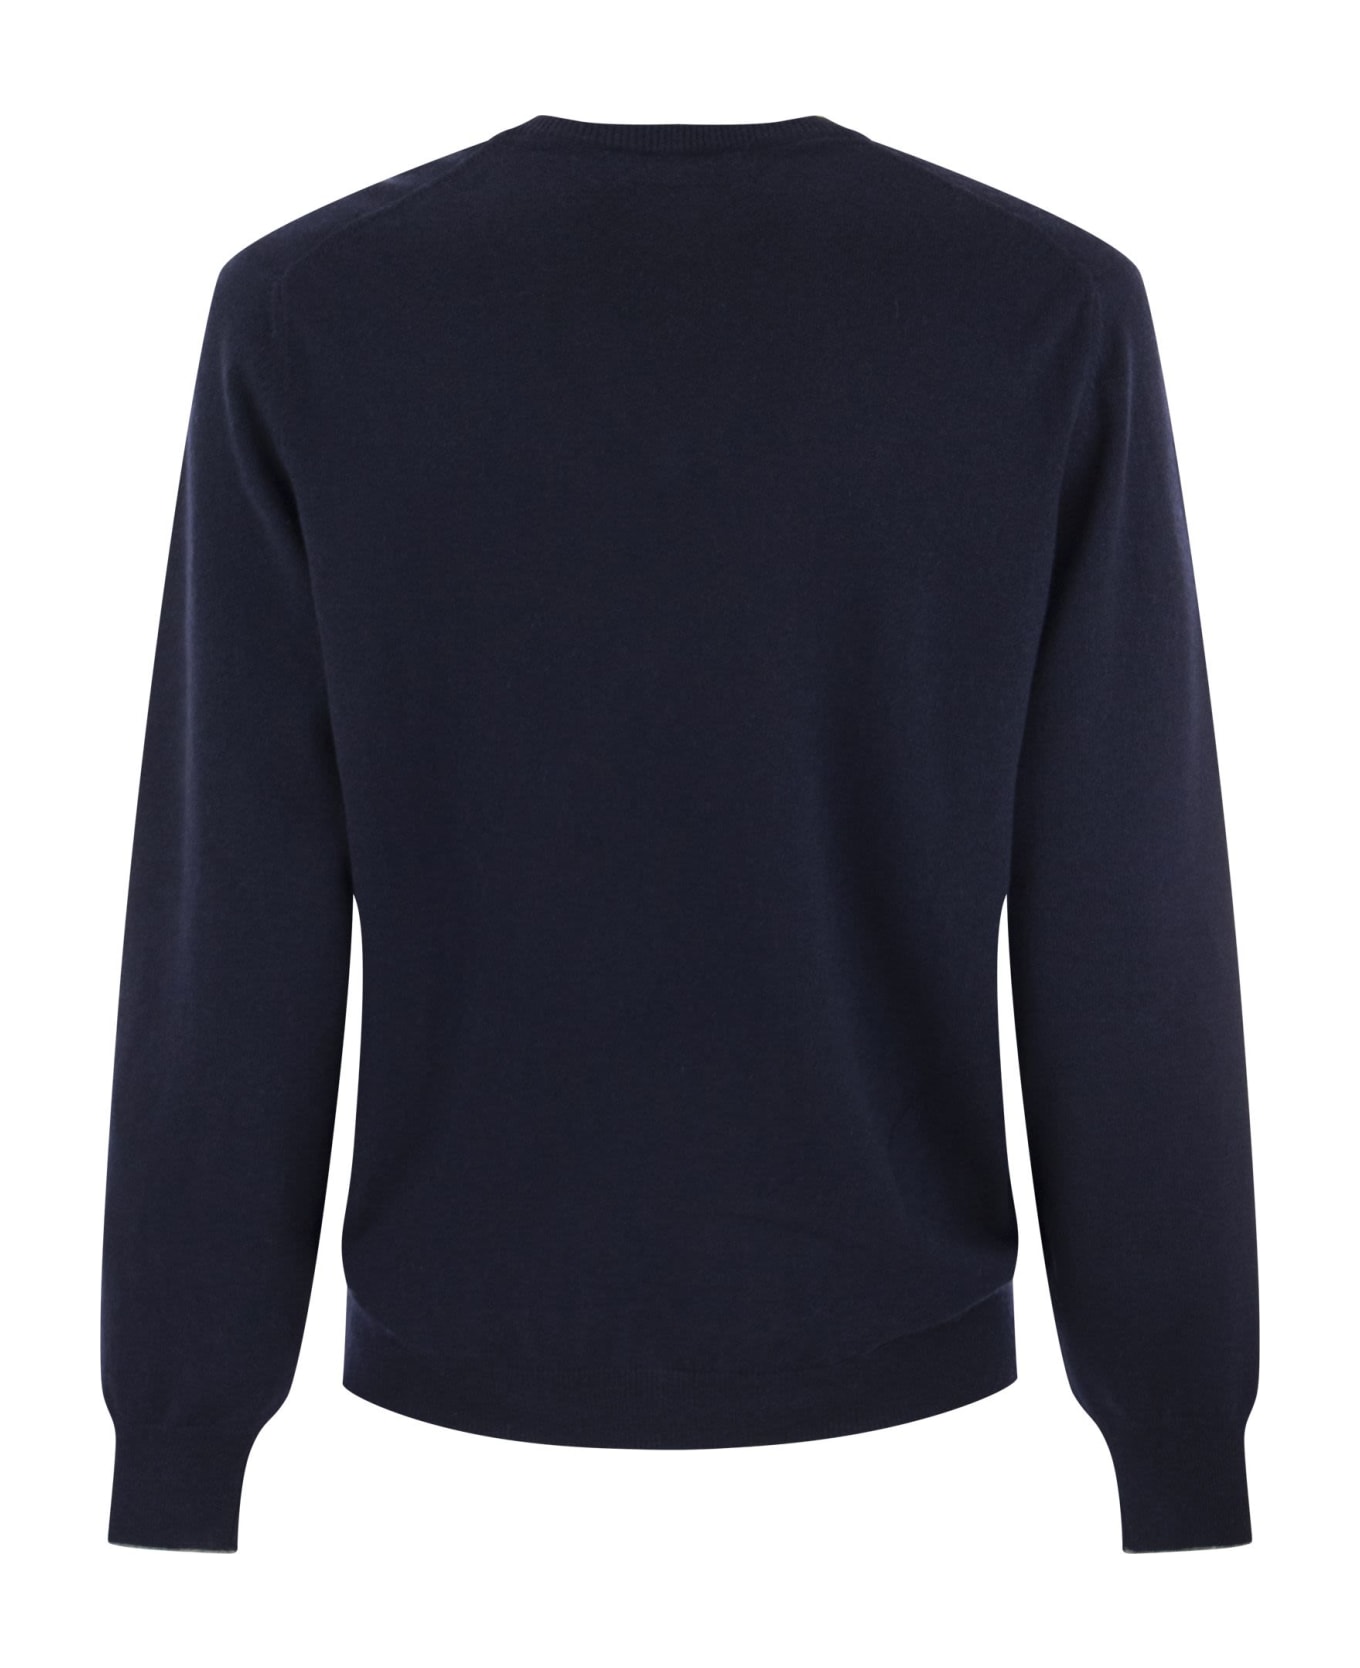 Brunello Cucinelli Cashmere Sweater - Navy Blue ニットウェア